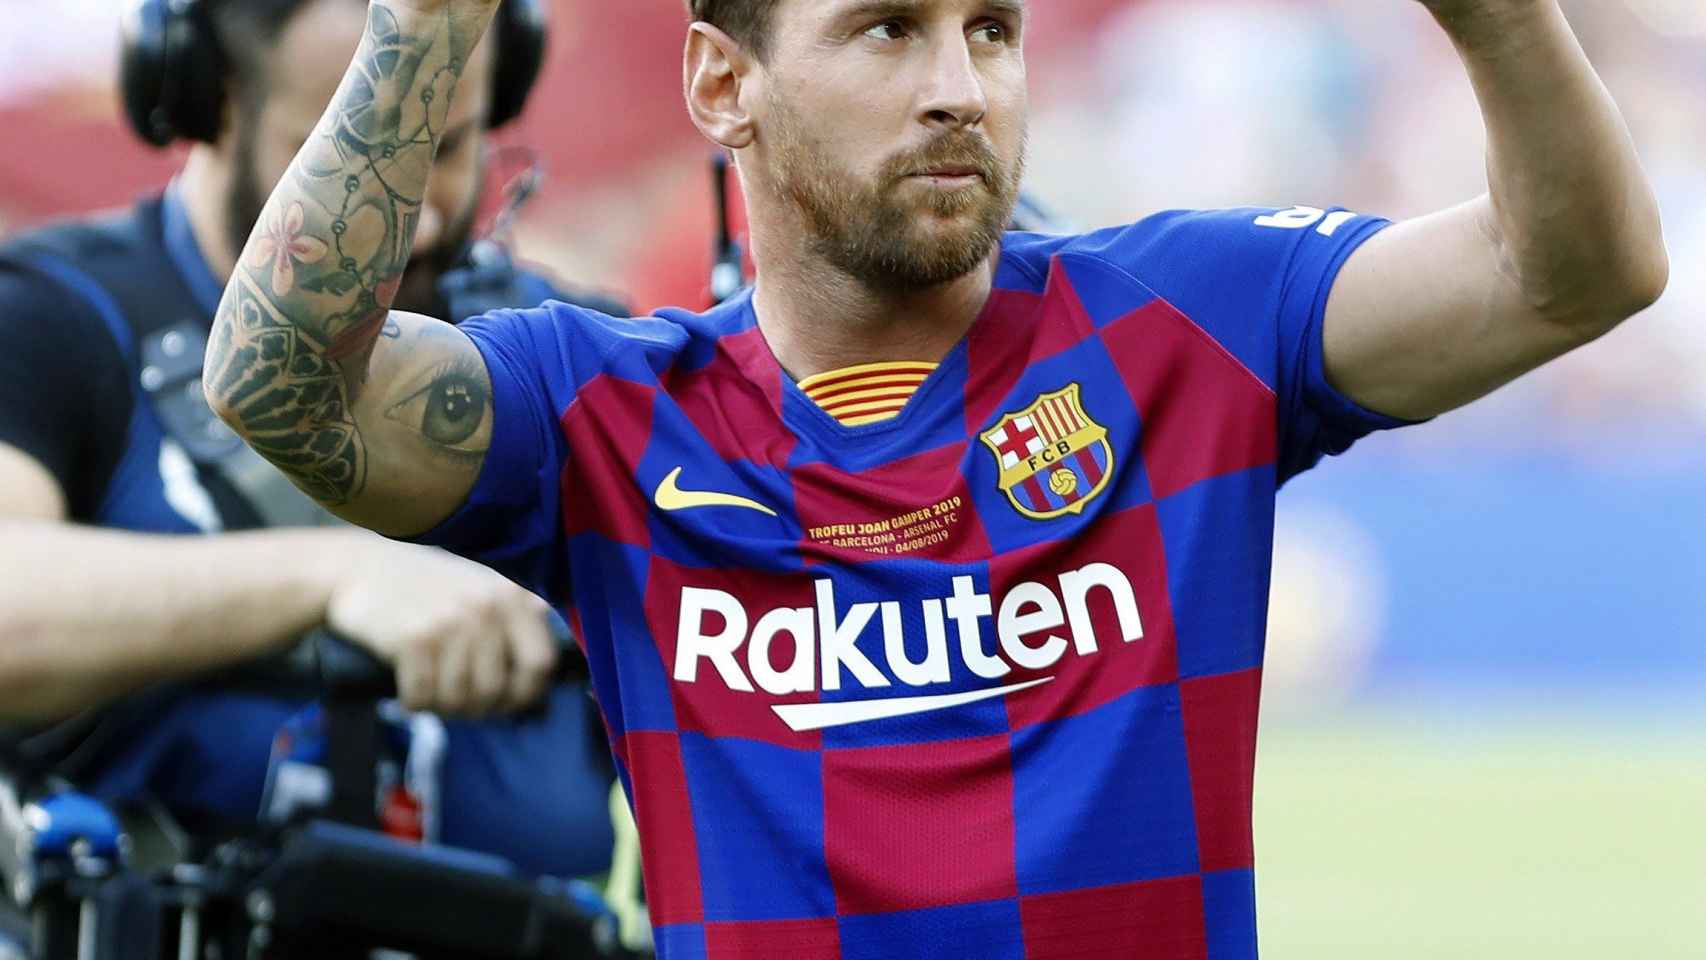 Leo Messi en el Trofeu Joan Gamper / EFE